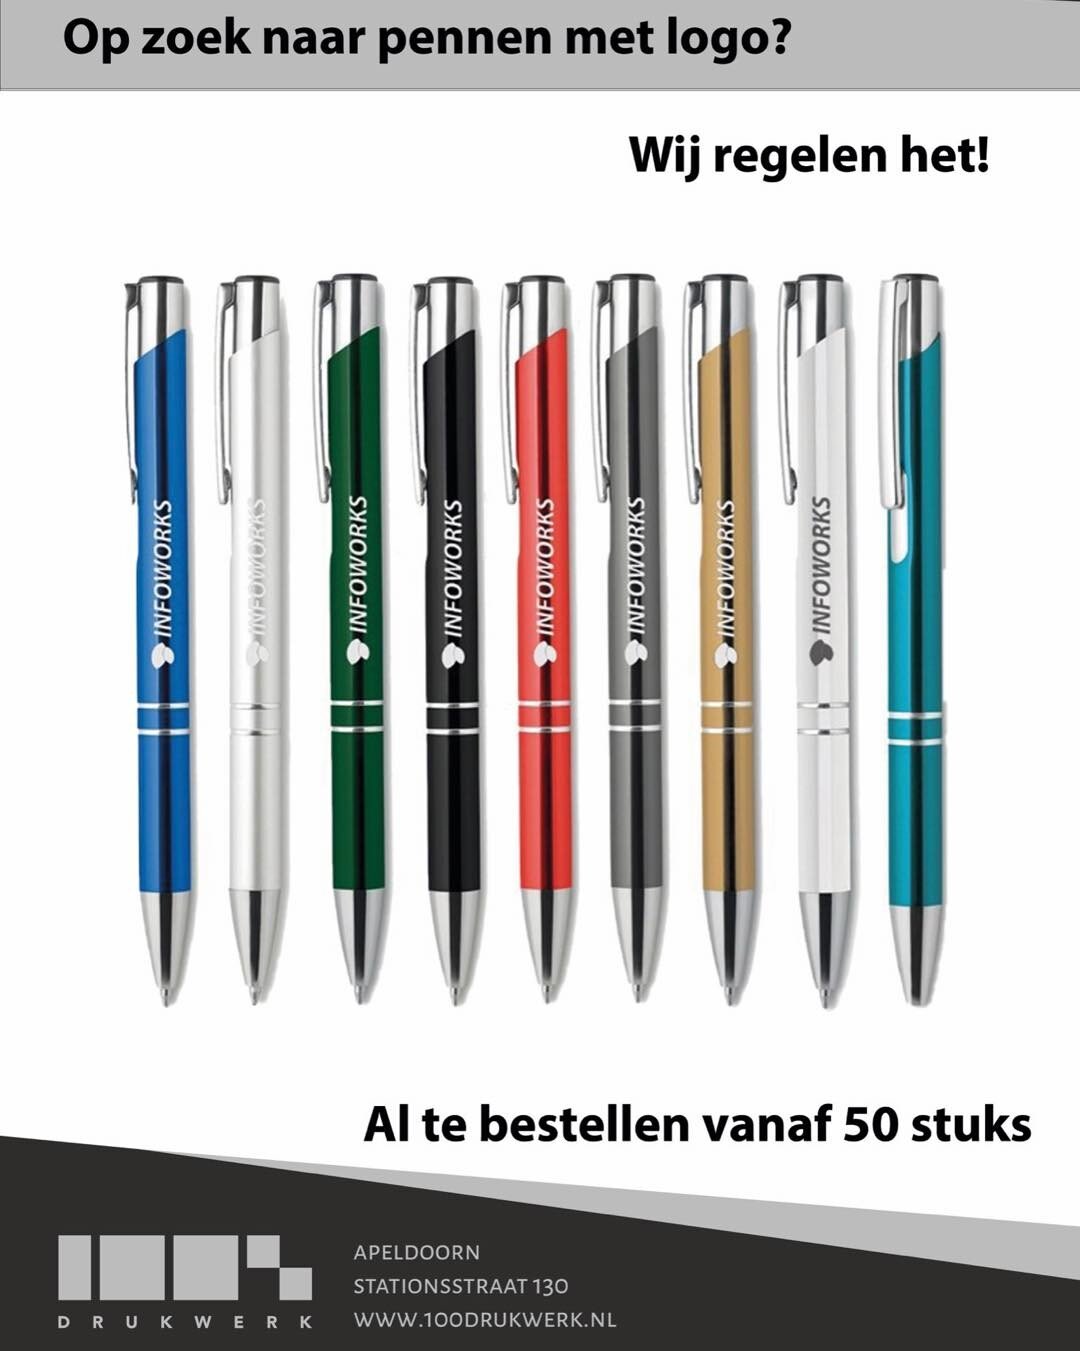 Op zoek naar pennen met een logo van uw bedrijf of vereniging?

Bij ons zijn ze al te bestellen vanaf 50 stuks! 

#drukwerk #relatiegeschenken #promotieartikelen #bedrijfskleding